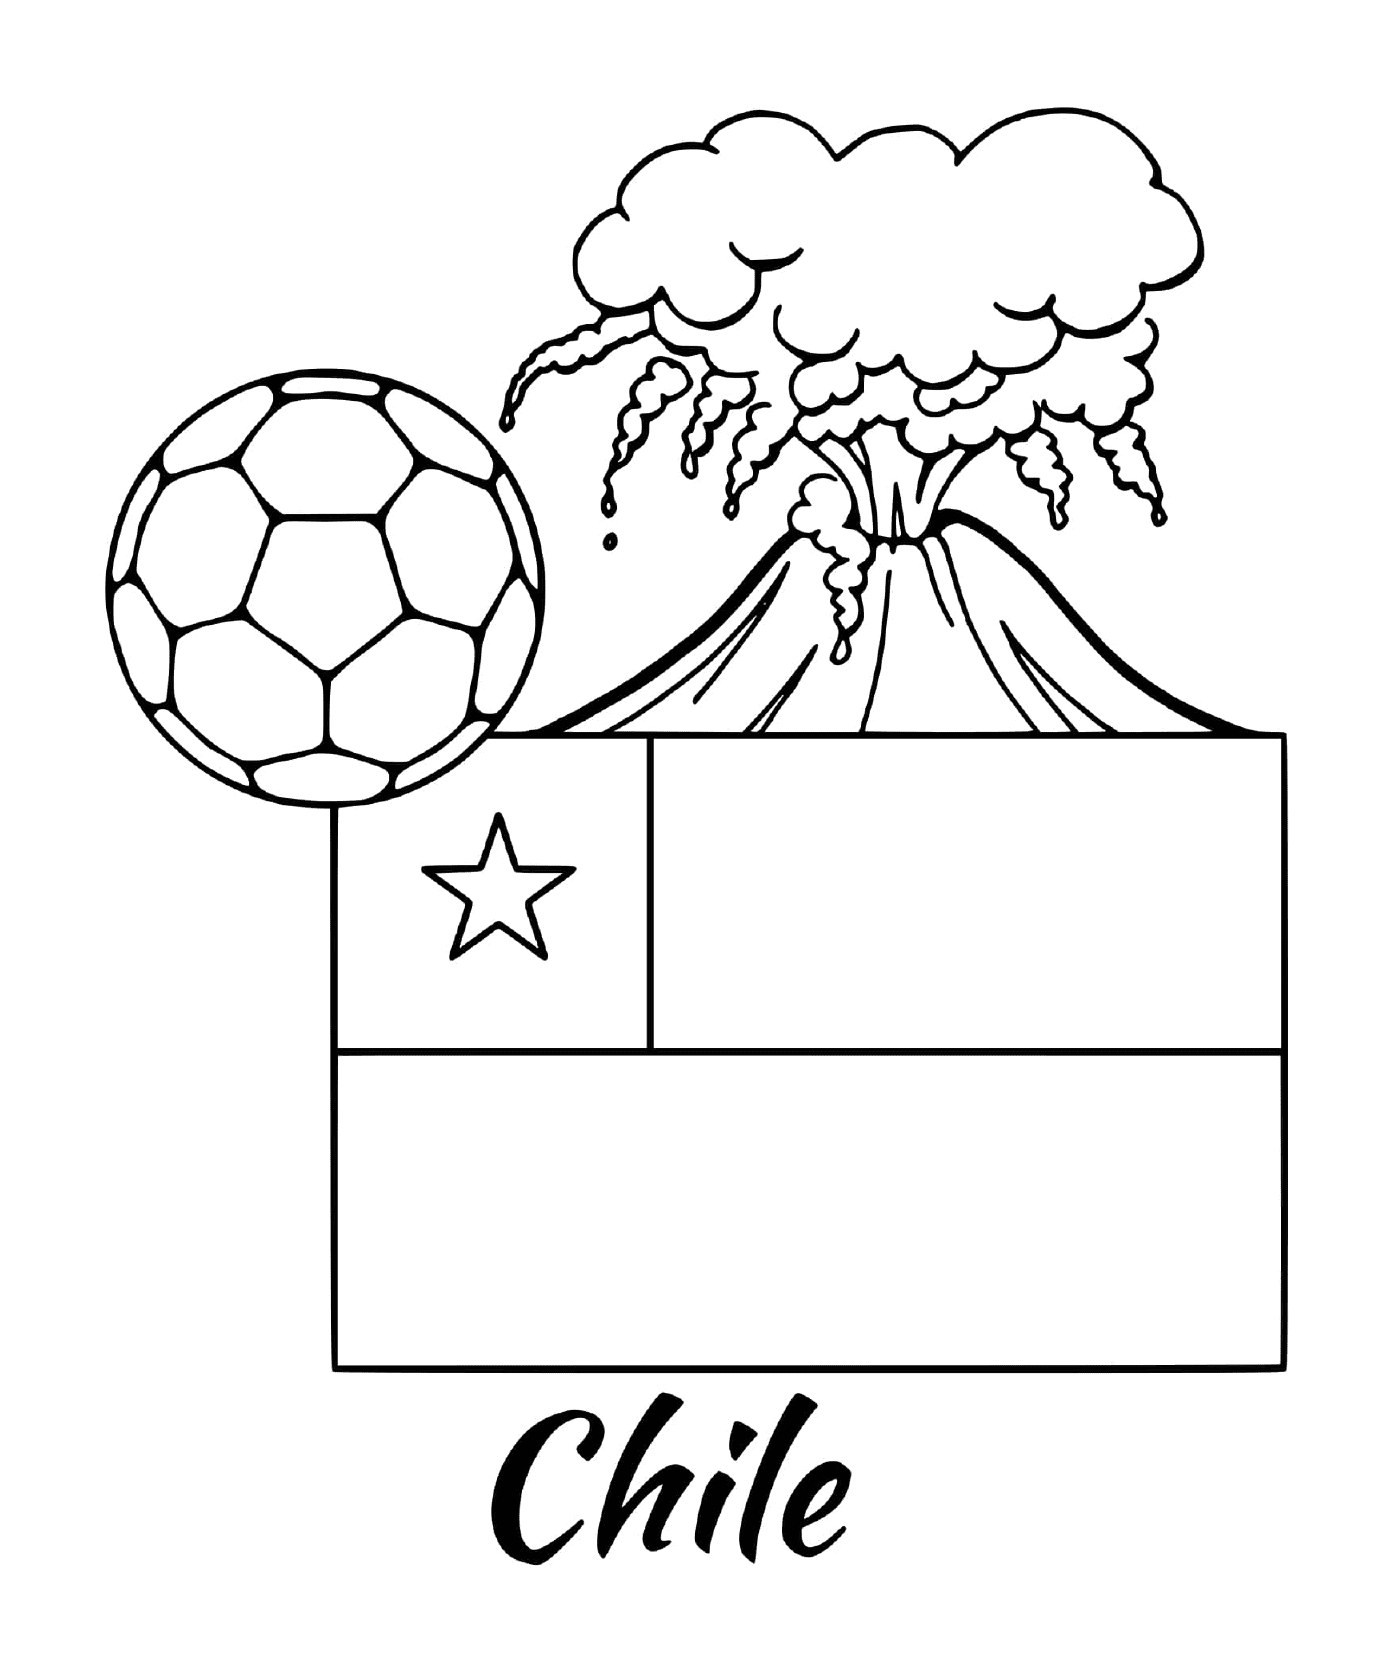  Bandiera del Cile, vulcano 